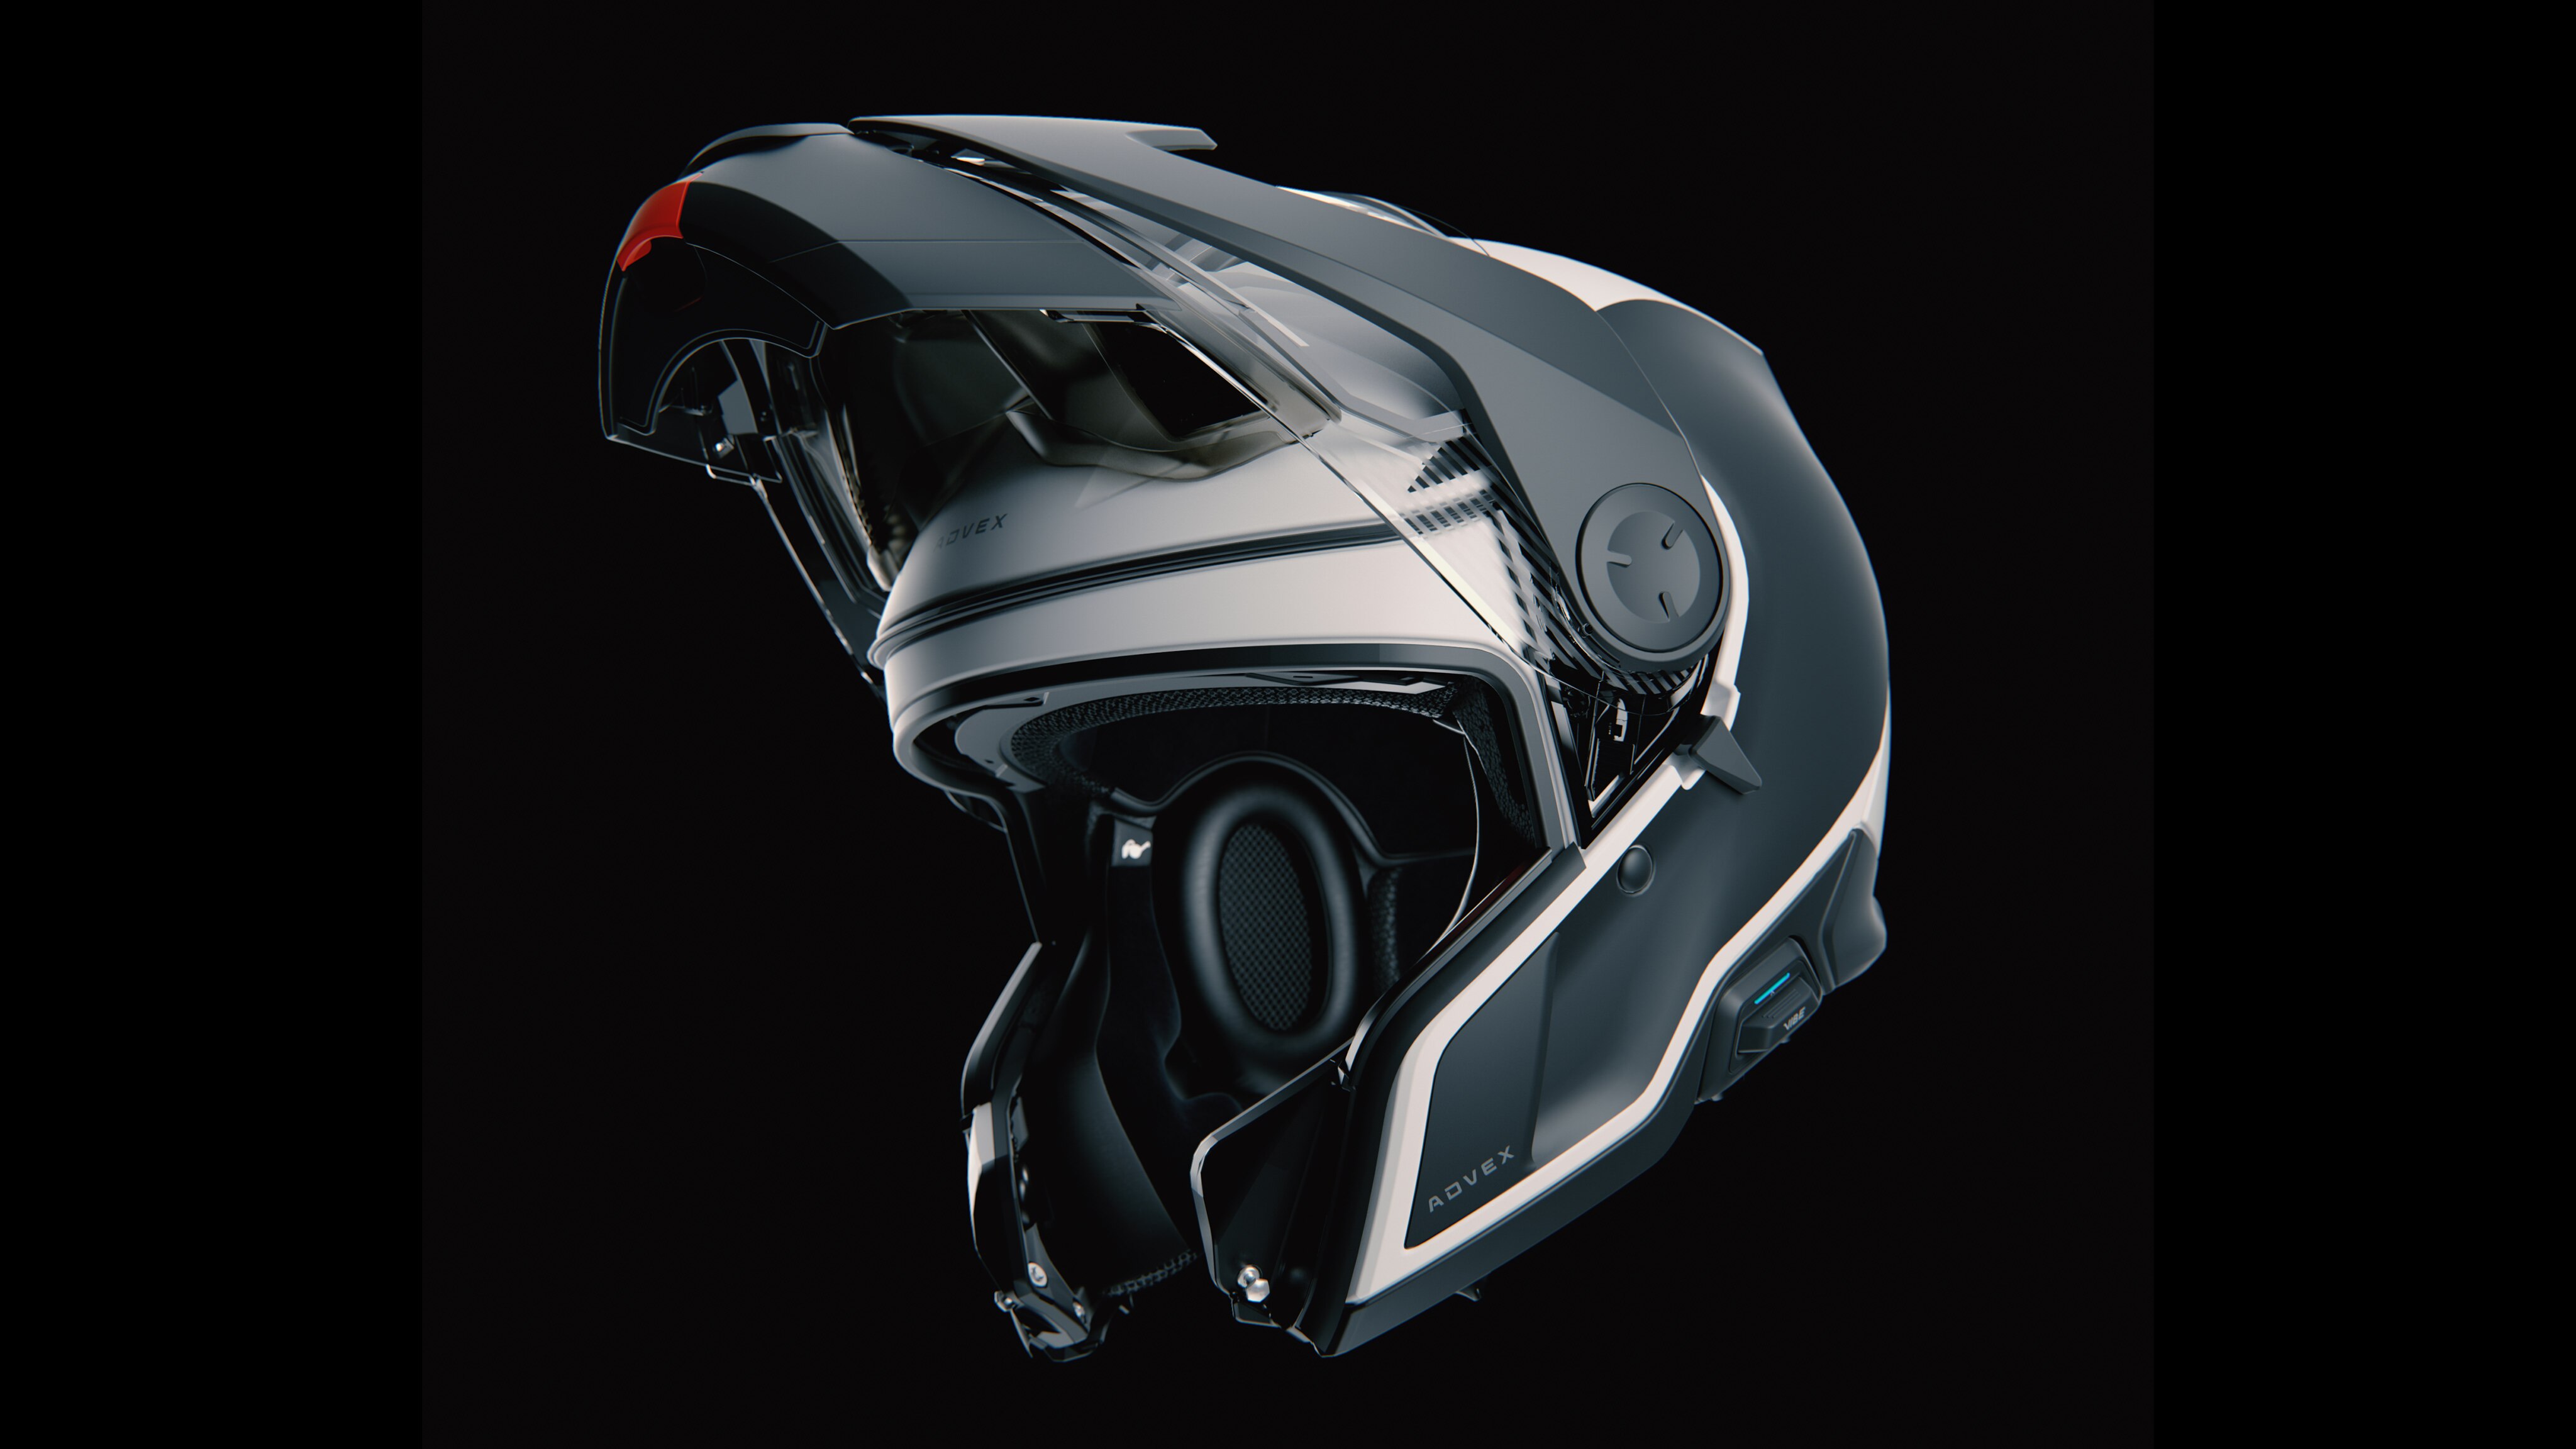 Advex-hjelm i jet-inspirert stil